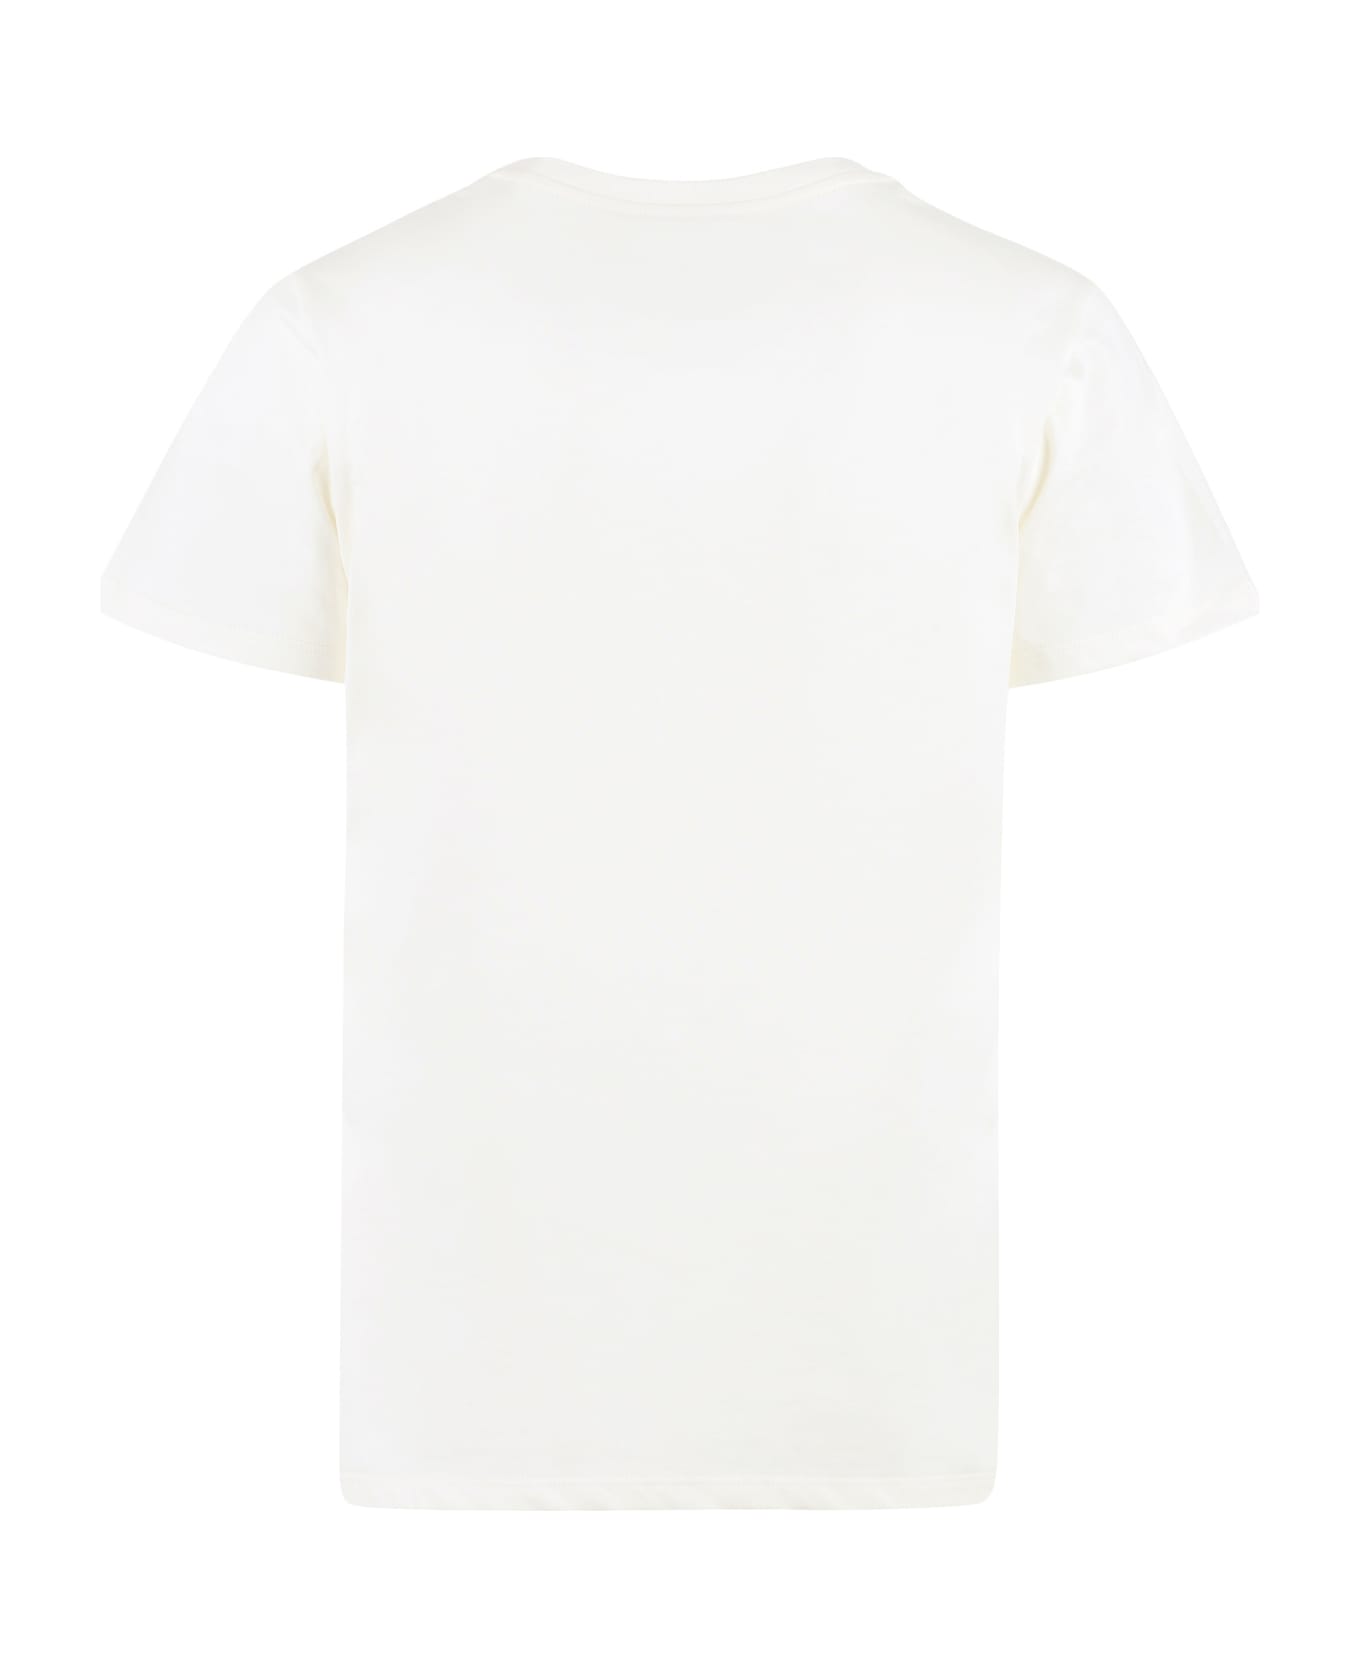 Alexander McQueen Calic Queen Graffiti T-shirt - Ivory Tシャツ